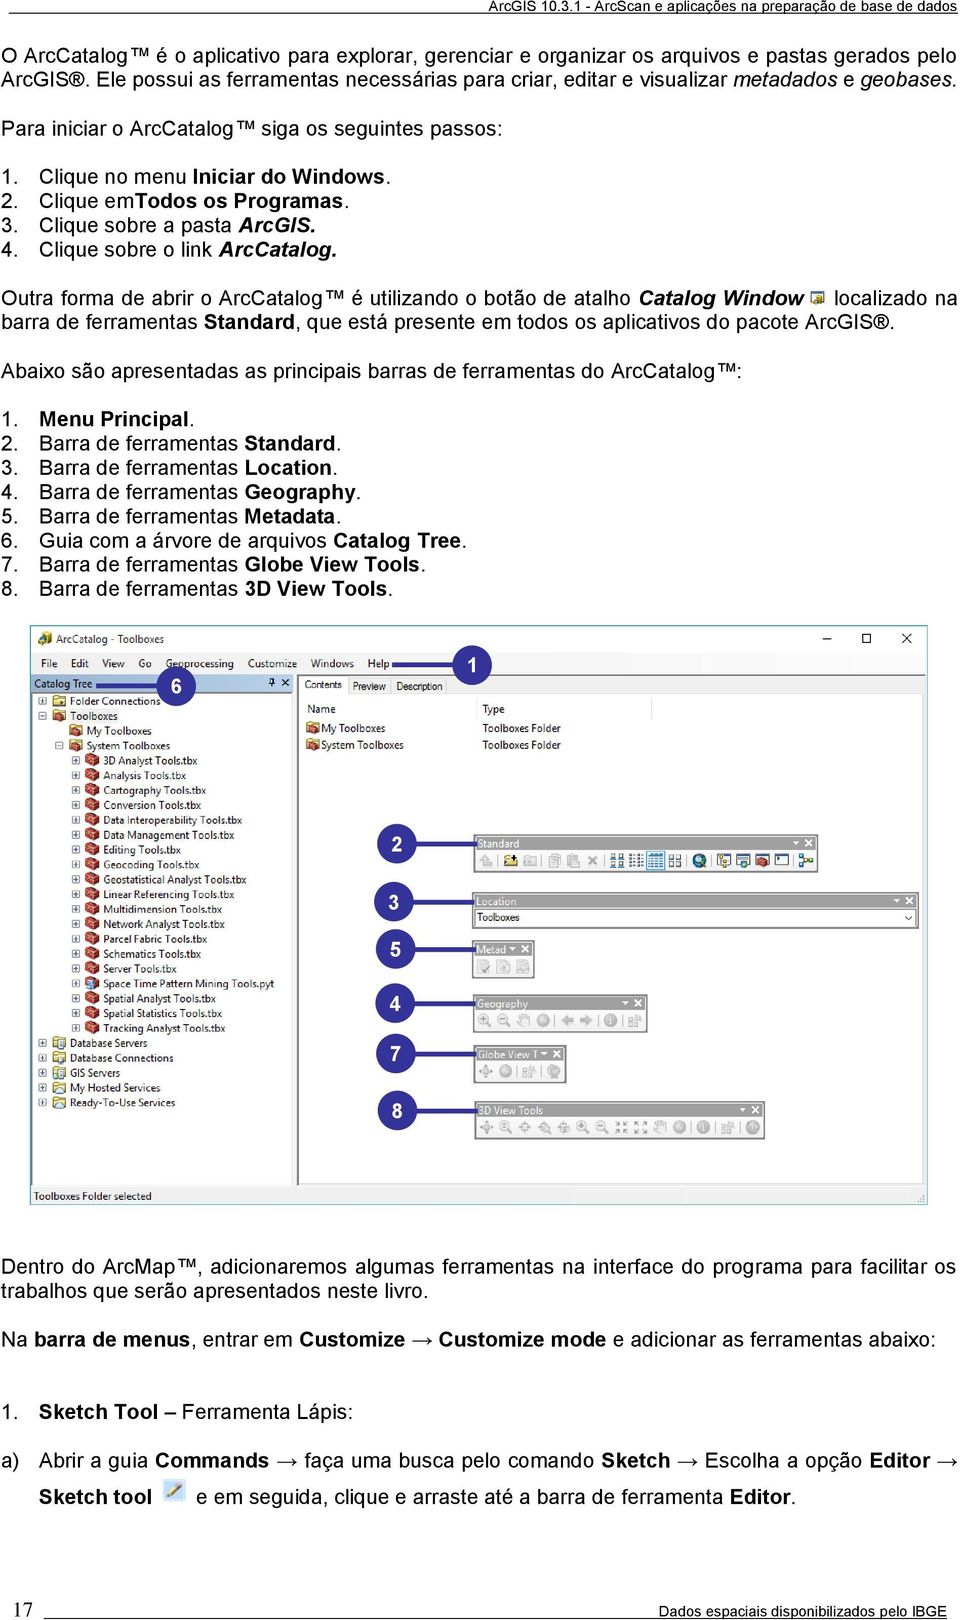 Outra forma de abrir o ArcCatalog é utilizando o botão de atalho Catalog Window localizado na barra de ferramentas Standard, que está presente em todos os aplicativos do pacote ArcGIS.